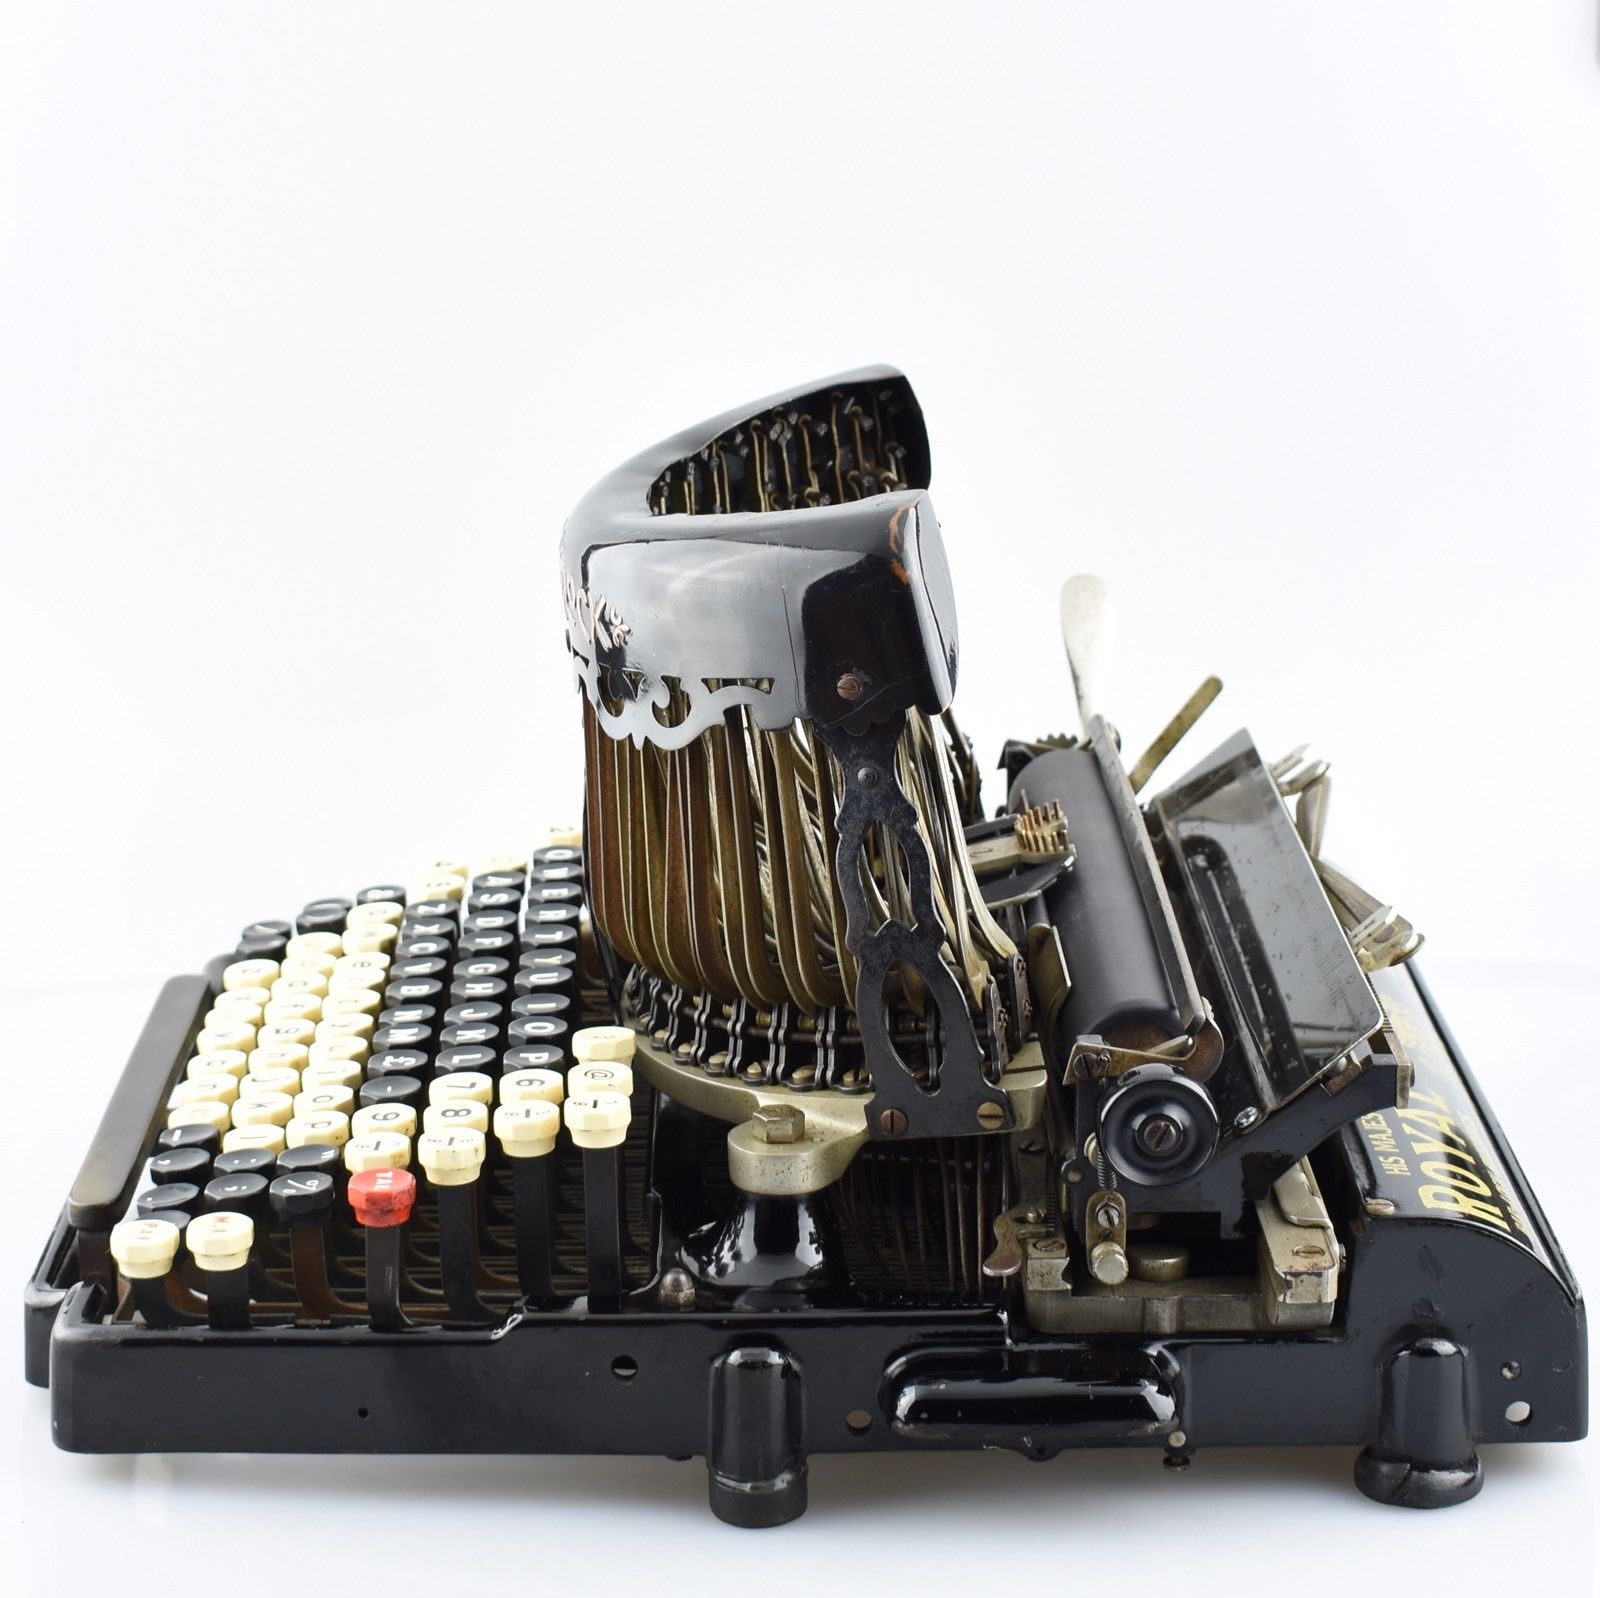 Antique ROYAL BARLOCK - Exquisite Eye Catching Typewriter - Original  Condition